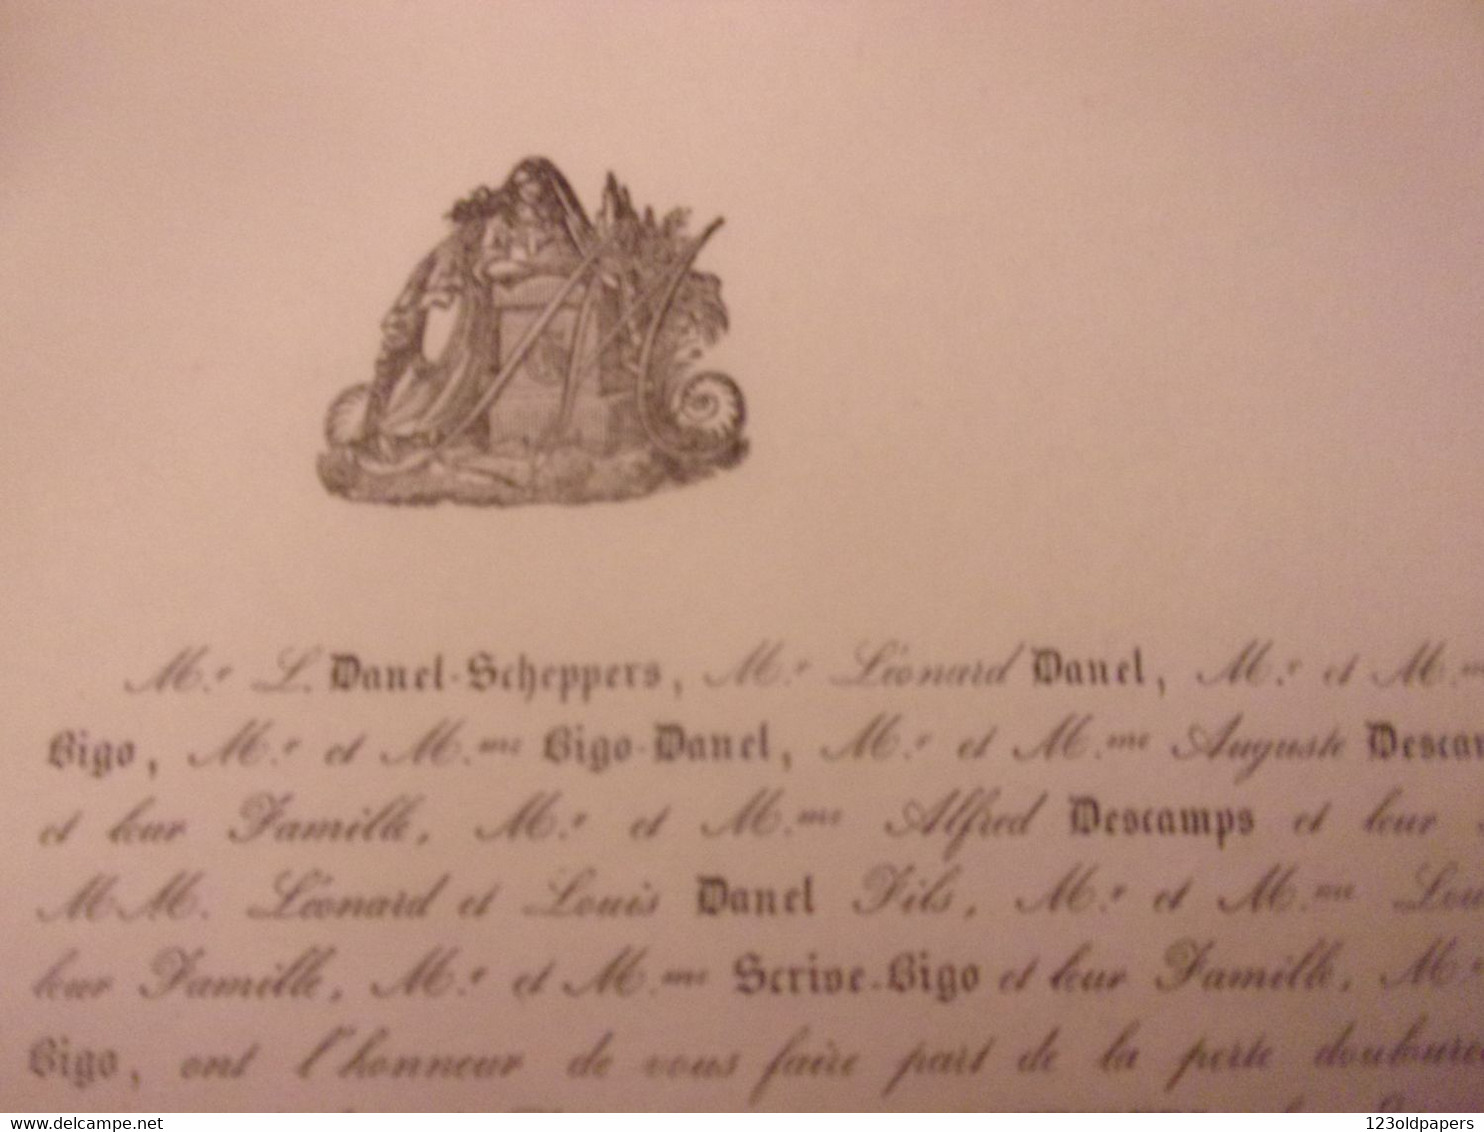 1838 DECES DE DAME DANEL SCHEPPERS A LOOS FAMILLE BIGO  DESCAMPS SCRIVE PAPIER SOIE PAIN DISTRIBUE PAUVRES DE LOOS NORD - Obituary Notices